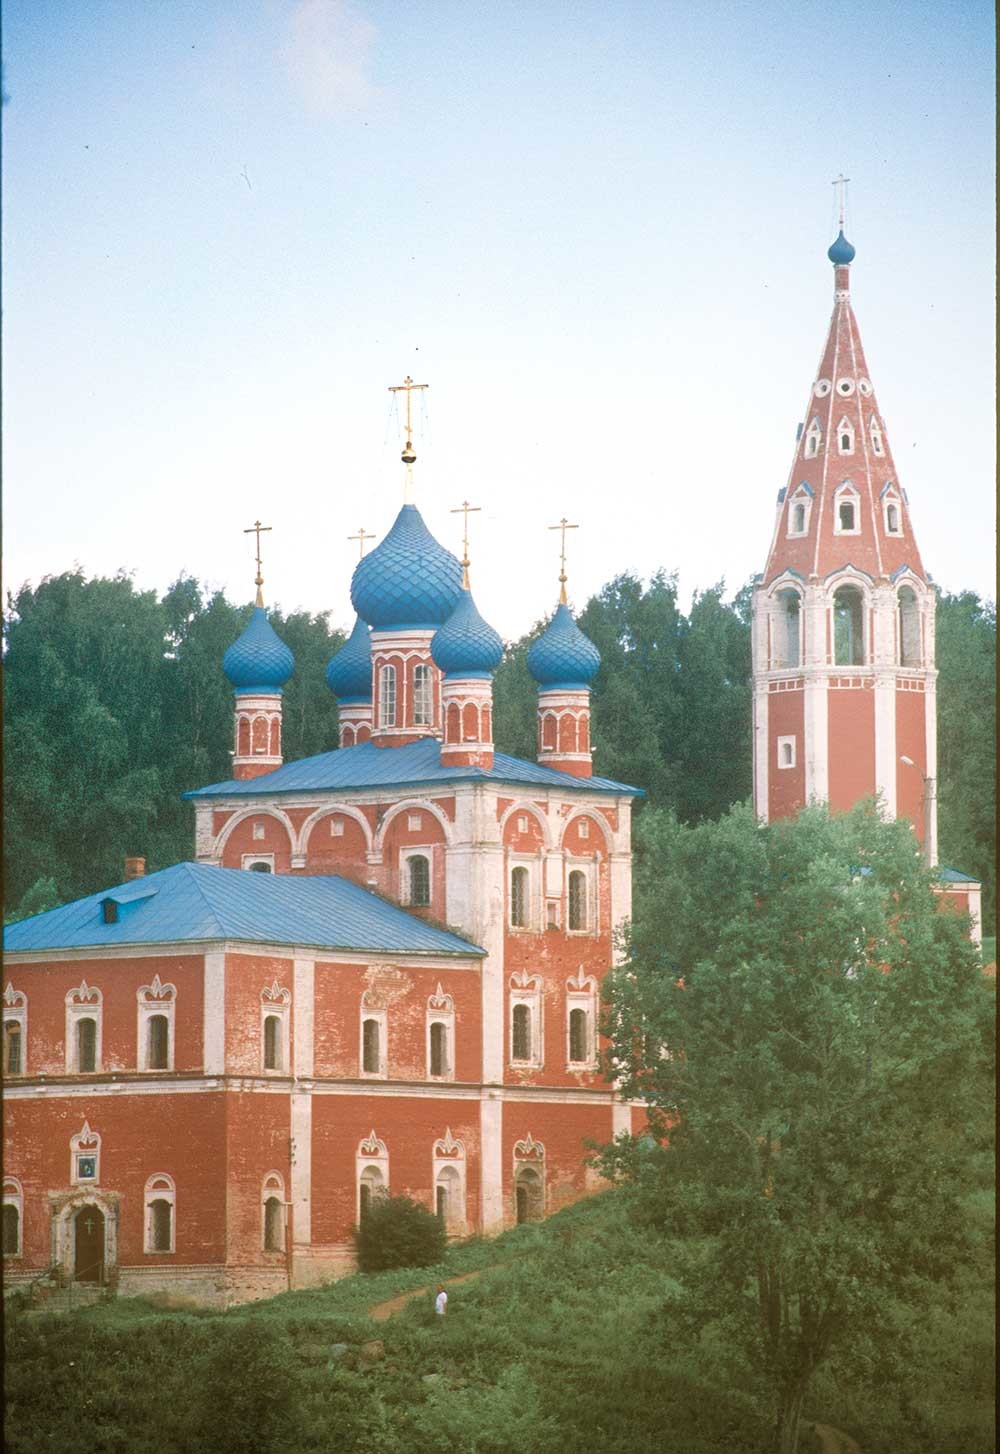 Campanile e Chiesa dell’Icona della Vergine di Kazan. Vista a sud-ovest dal fiume Volga. 15 luglio 2007
